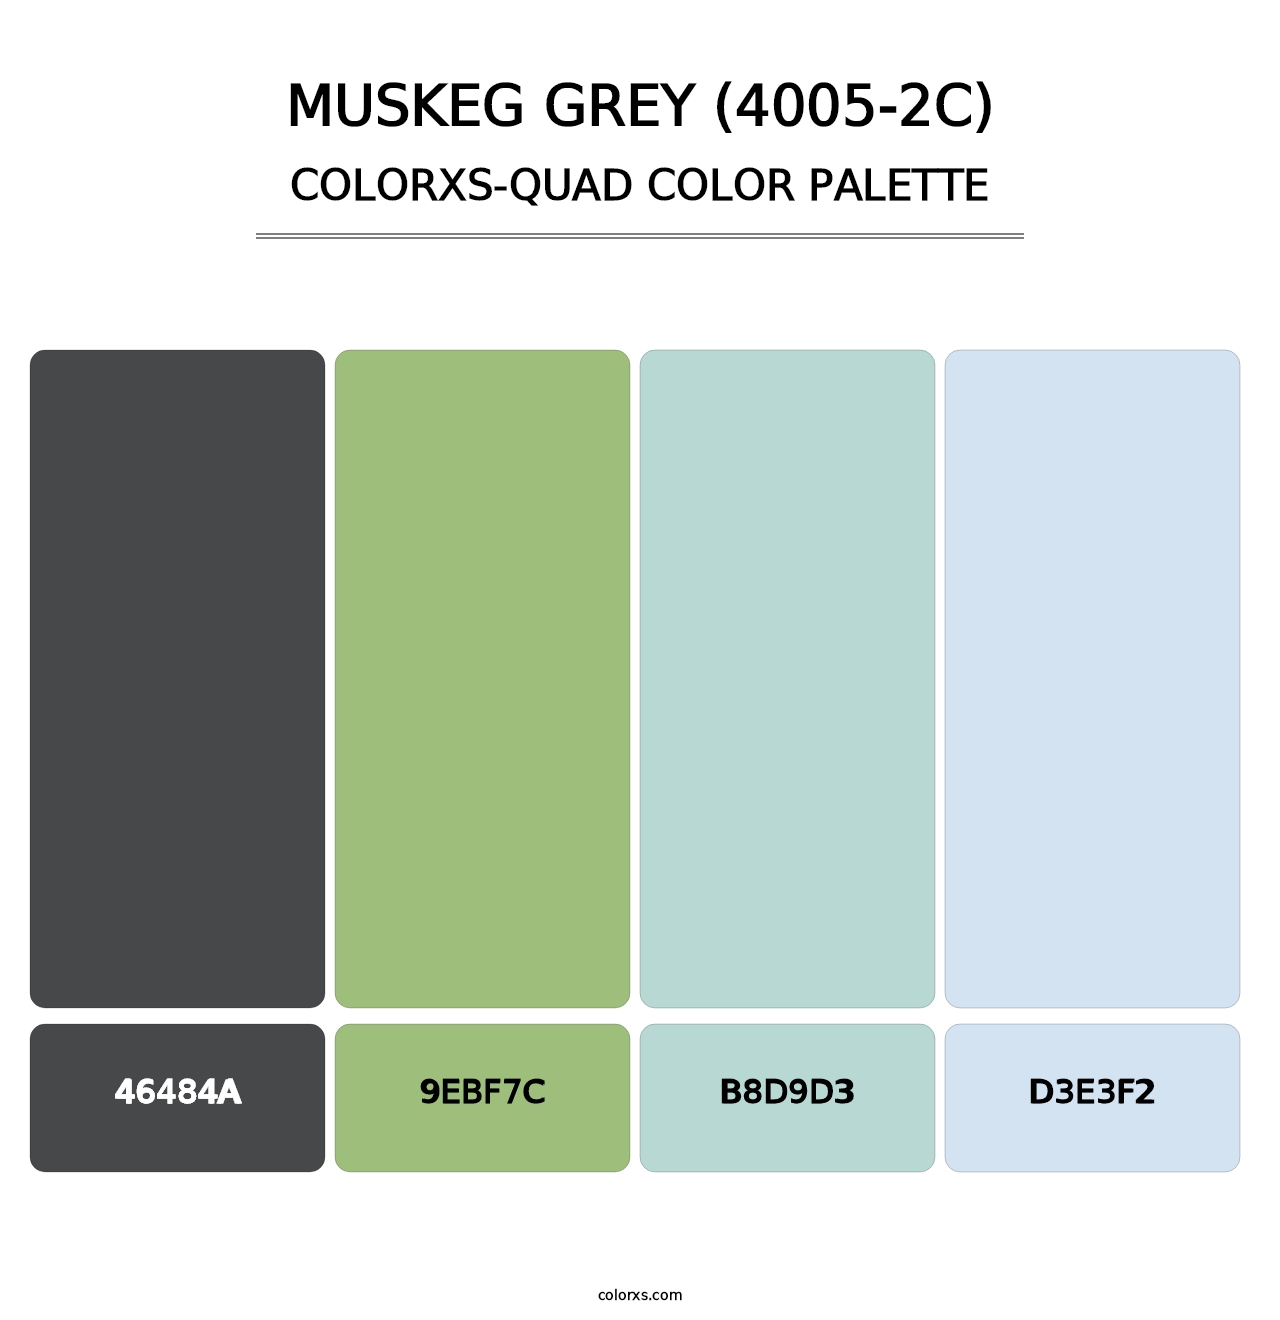 Muskeg Grey (4005-2C) - Colorxs Quad Palette